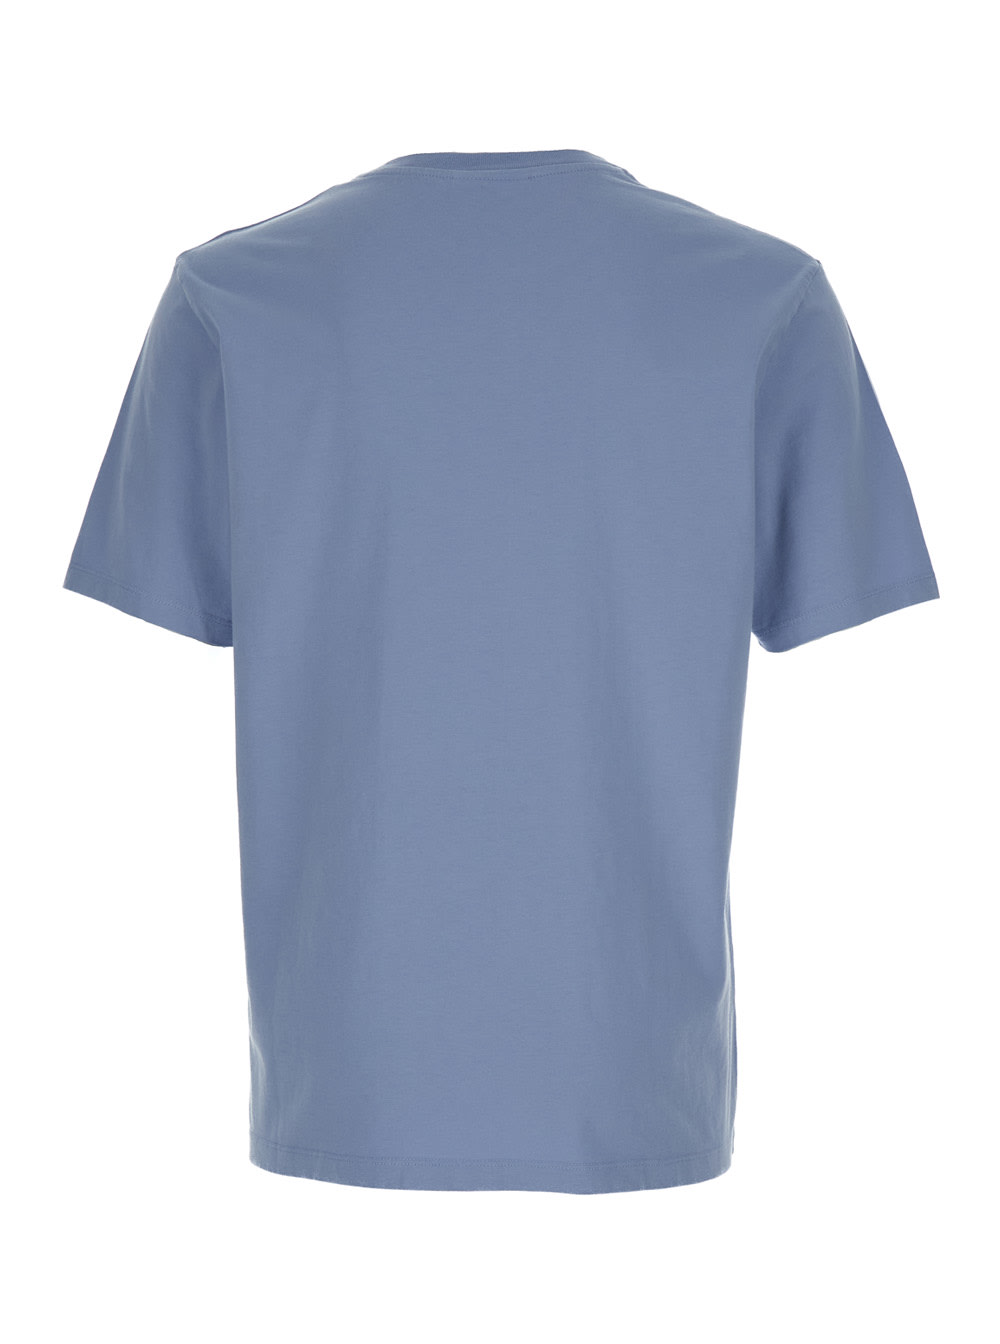 Shop Maison Kitsuné Chillax Fox Patch Regular T-shirt In Light Blue